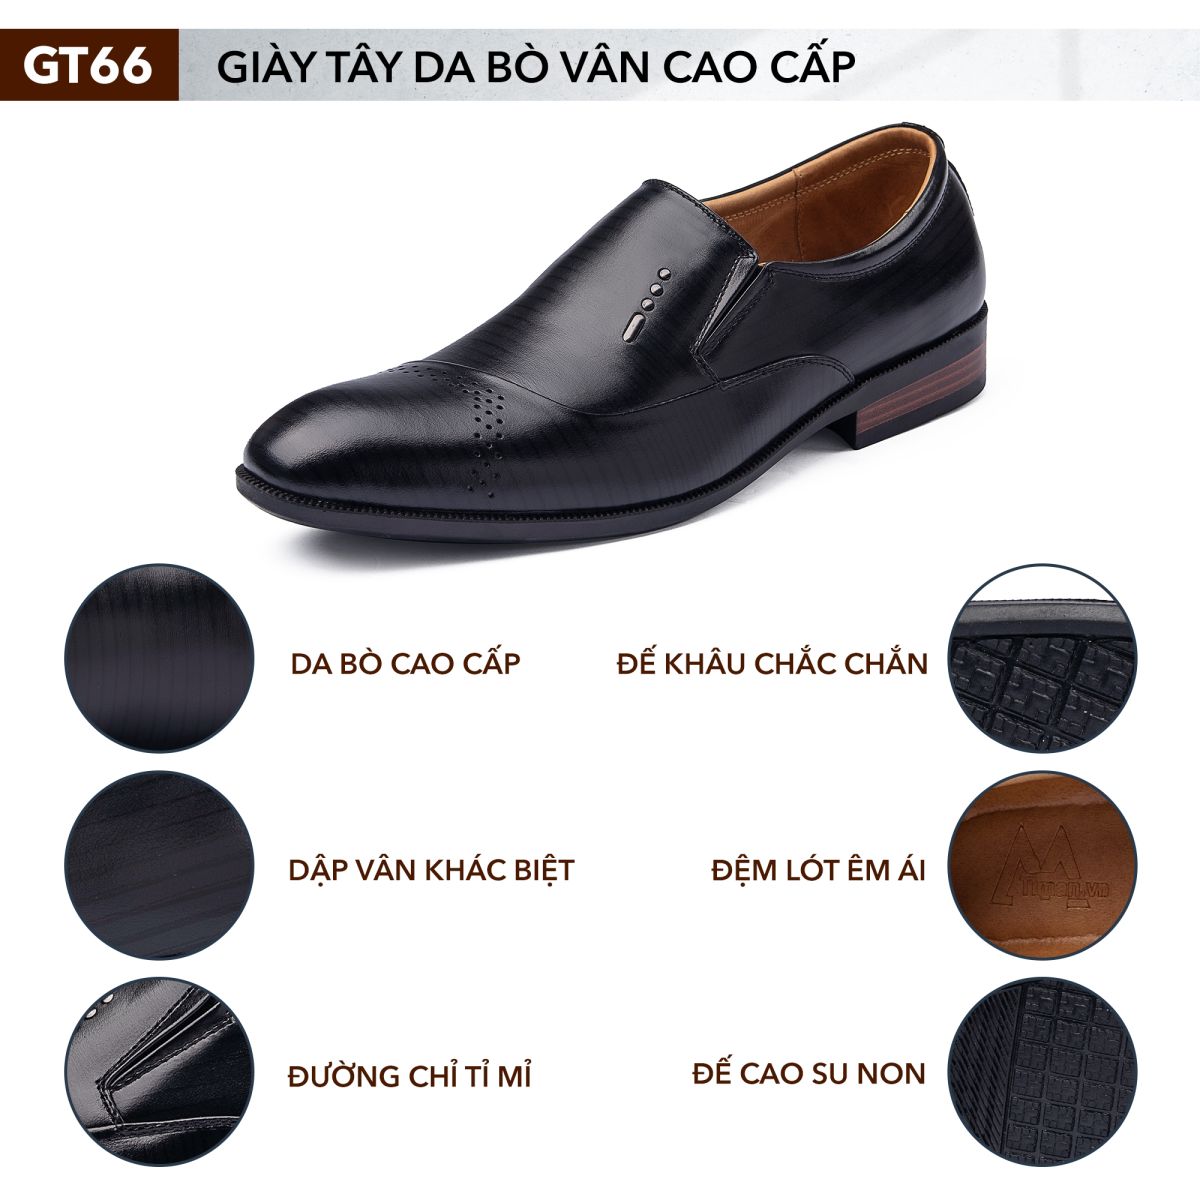 Giày tây nam GT66 chính hãng